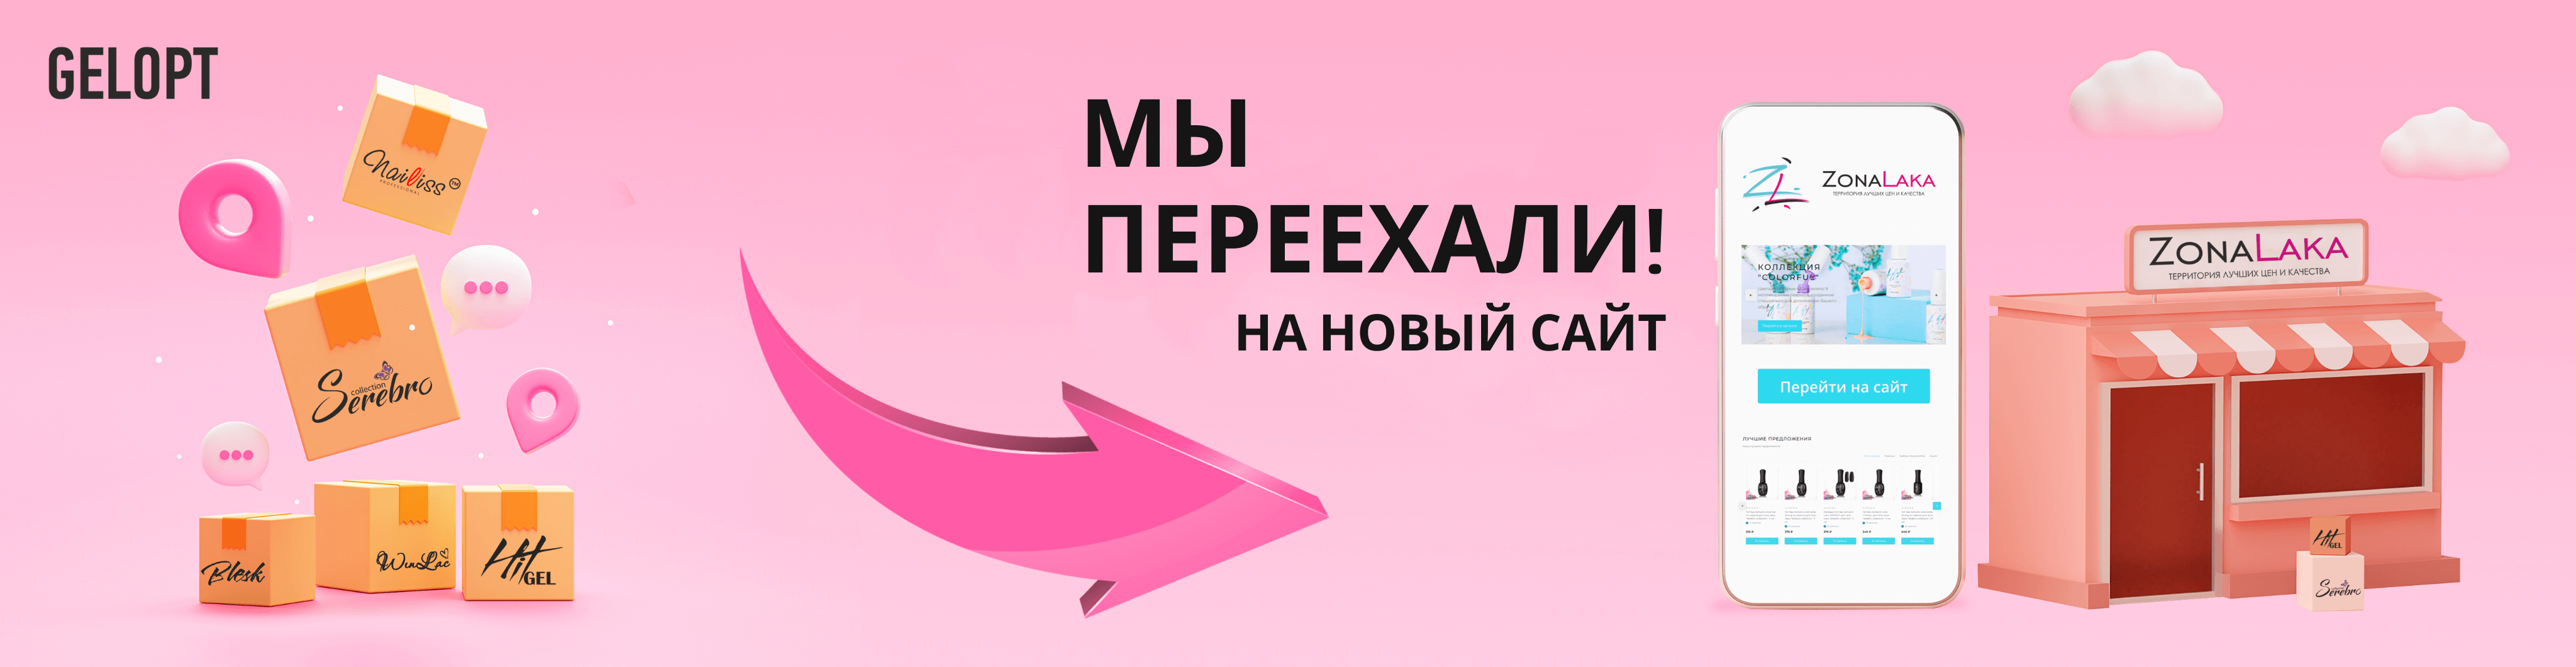 Интернет-магазин ногтевой моды gelopt.ru